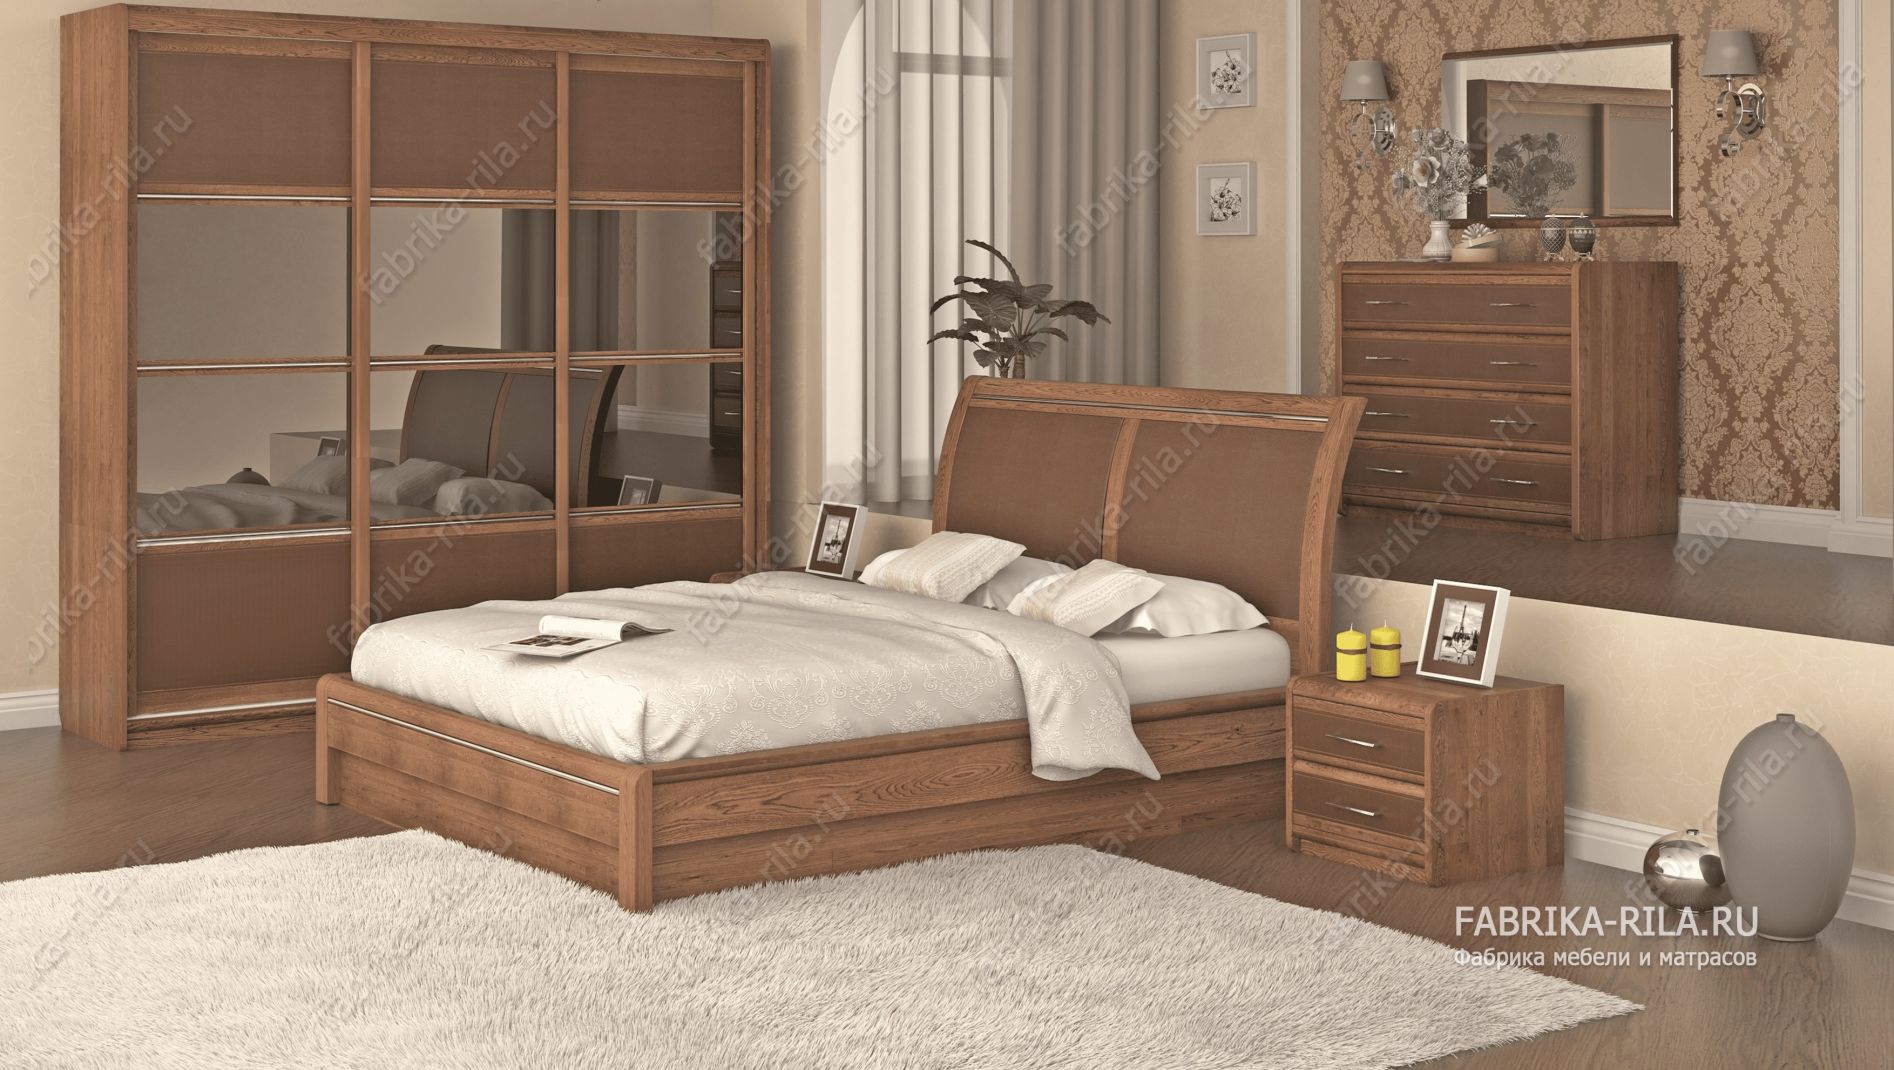 кровать Okaeri 6 см— 90x190 см. из дуба